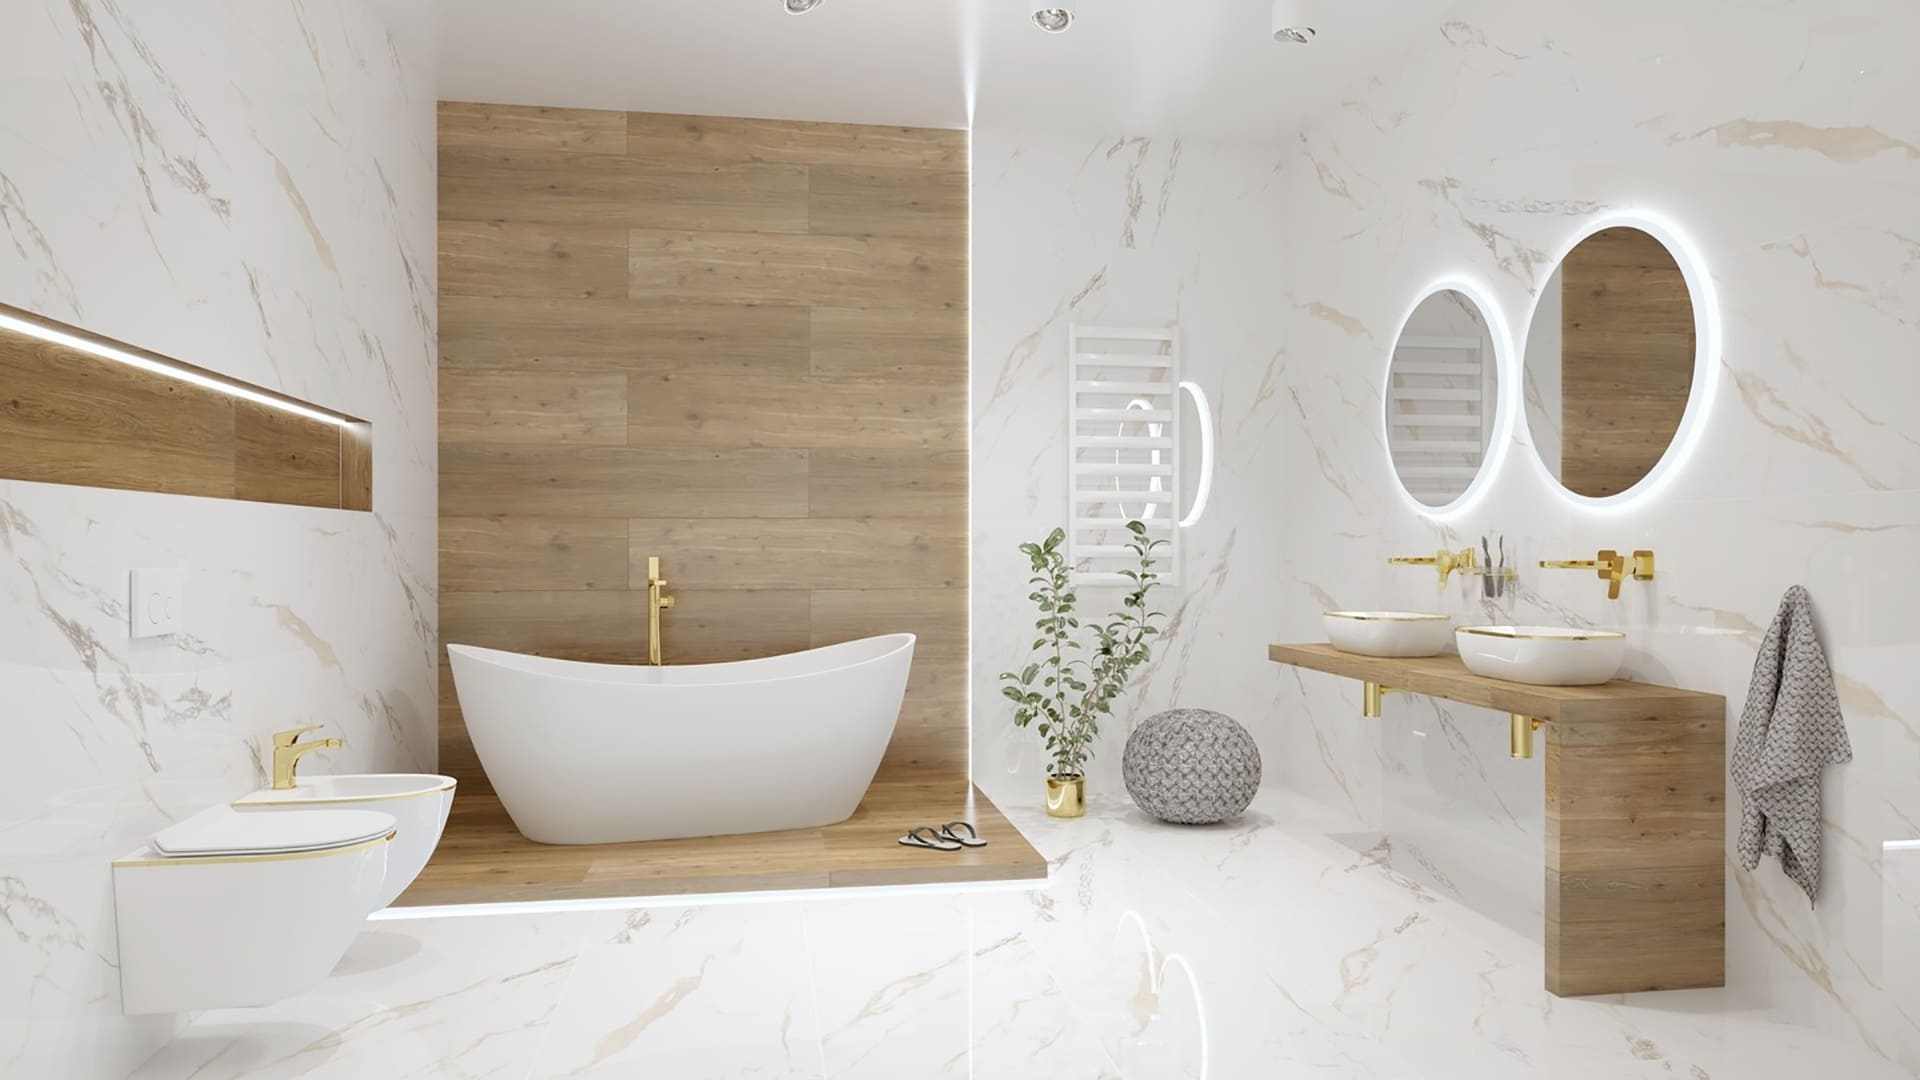 Lavita - популярний польський бренд сантехніки та меблів для ванної кімнати